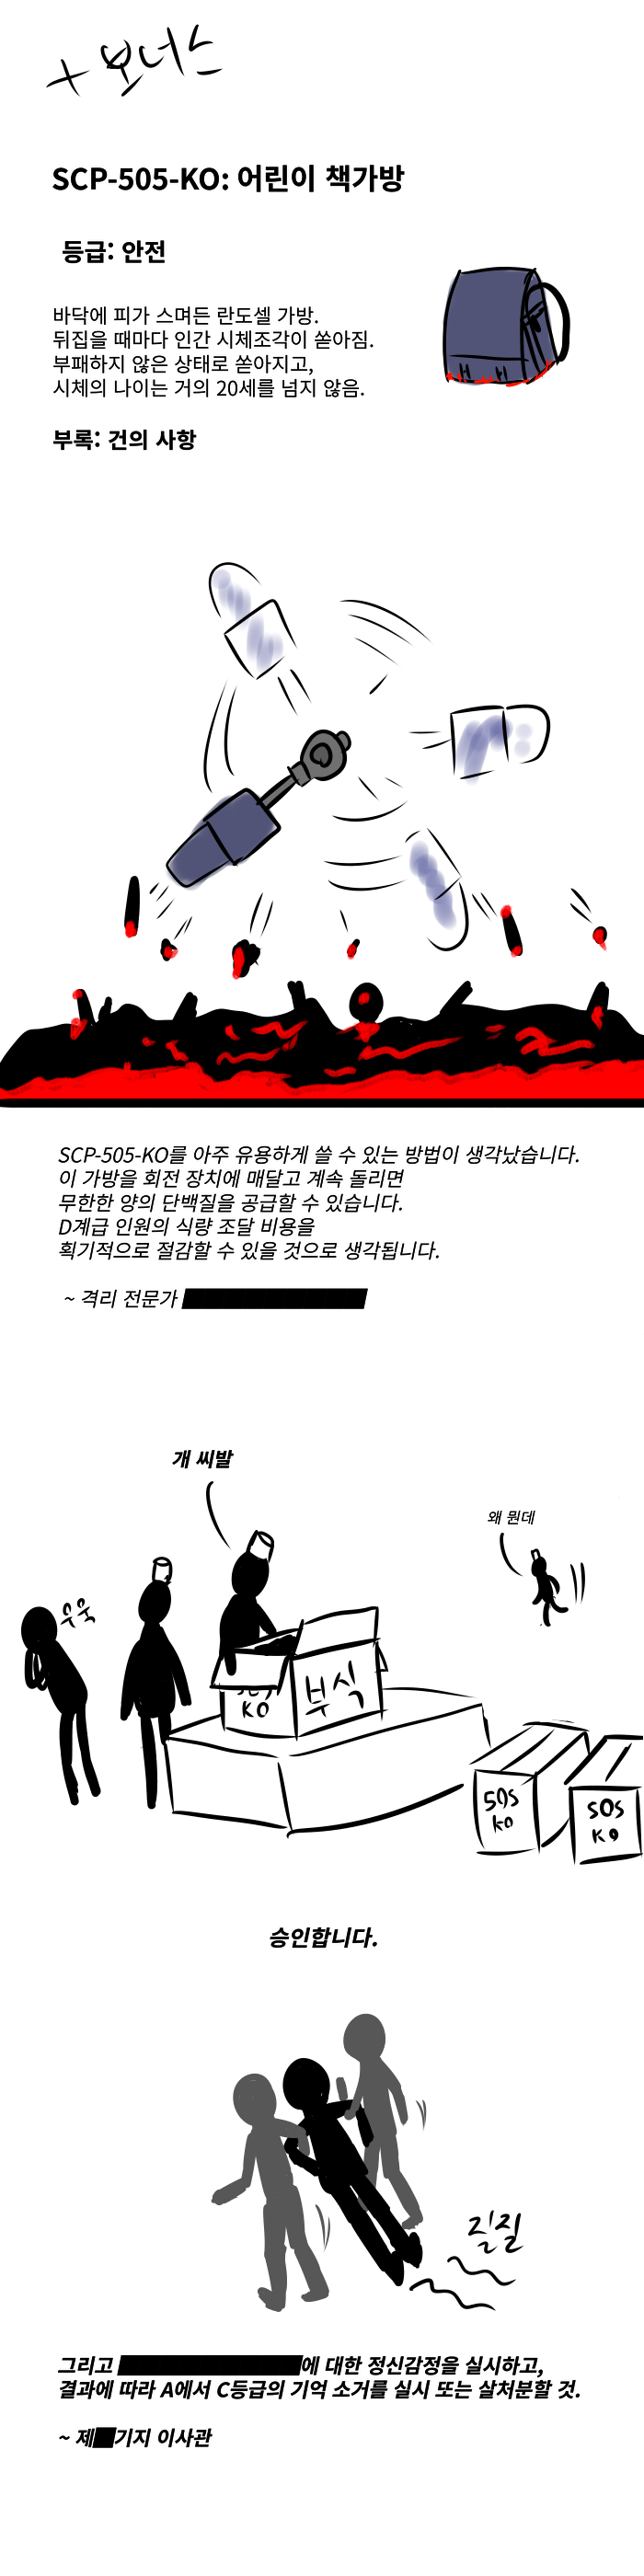 SCP재단/만화/약혐] SCP-1733 시즌 개막전 - 미스터리/공포 - 에펨코리아